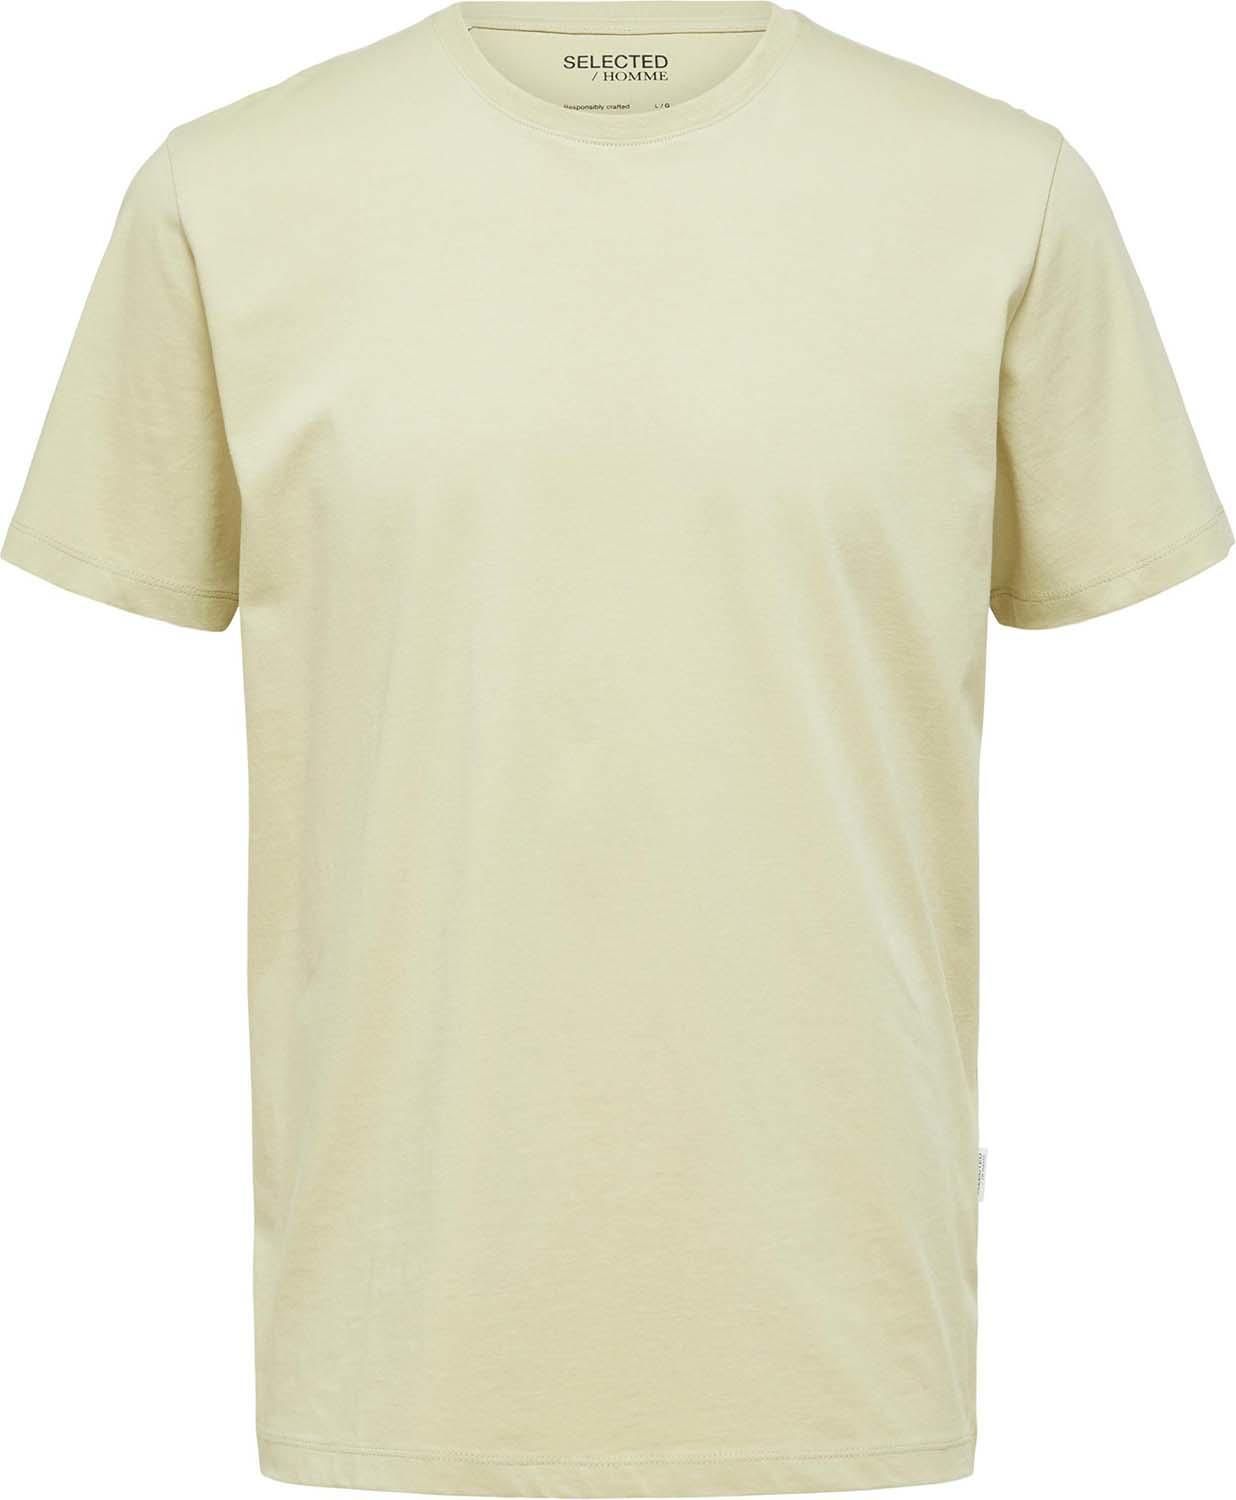 Selected Homme T-shirt Groen 